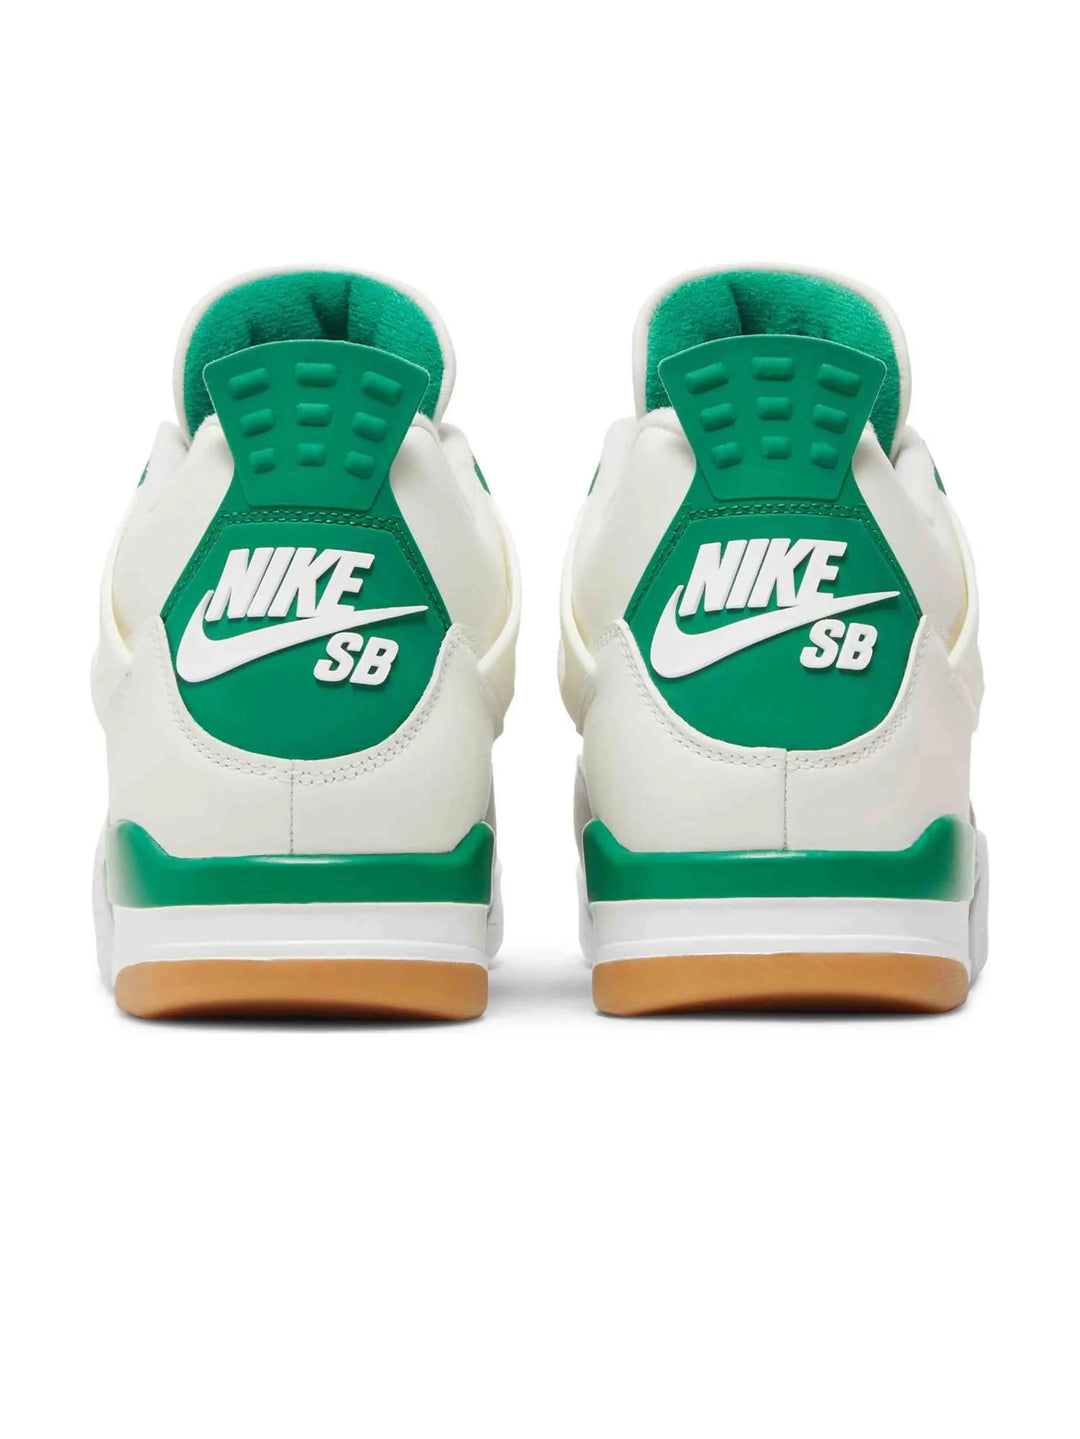 Nike Air Jordan 4 Retro SB Pine Green Prior